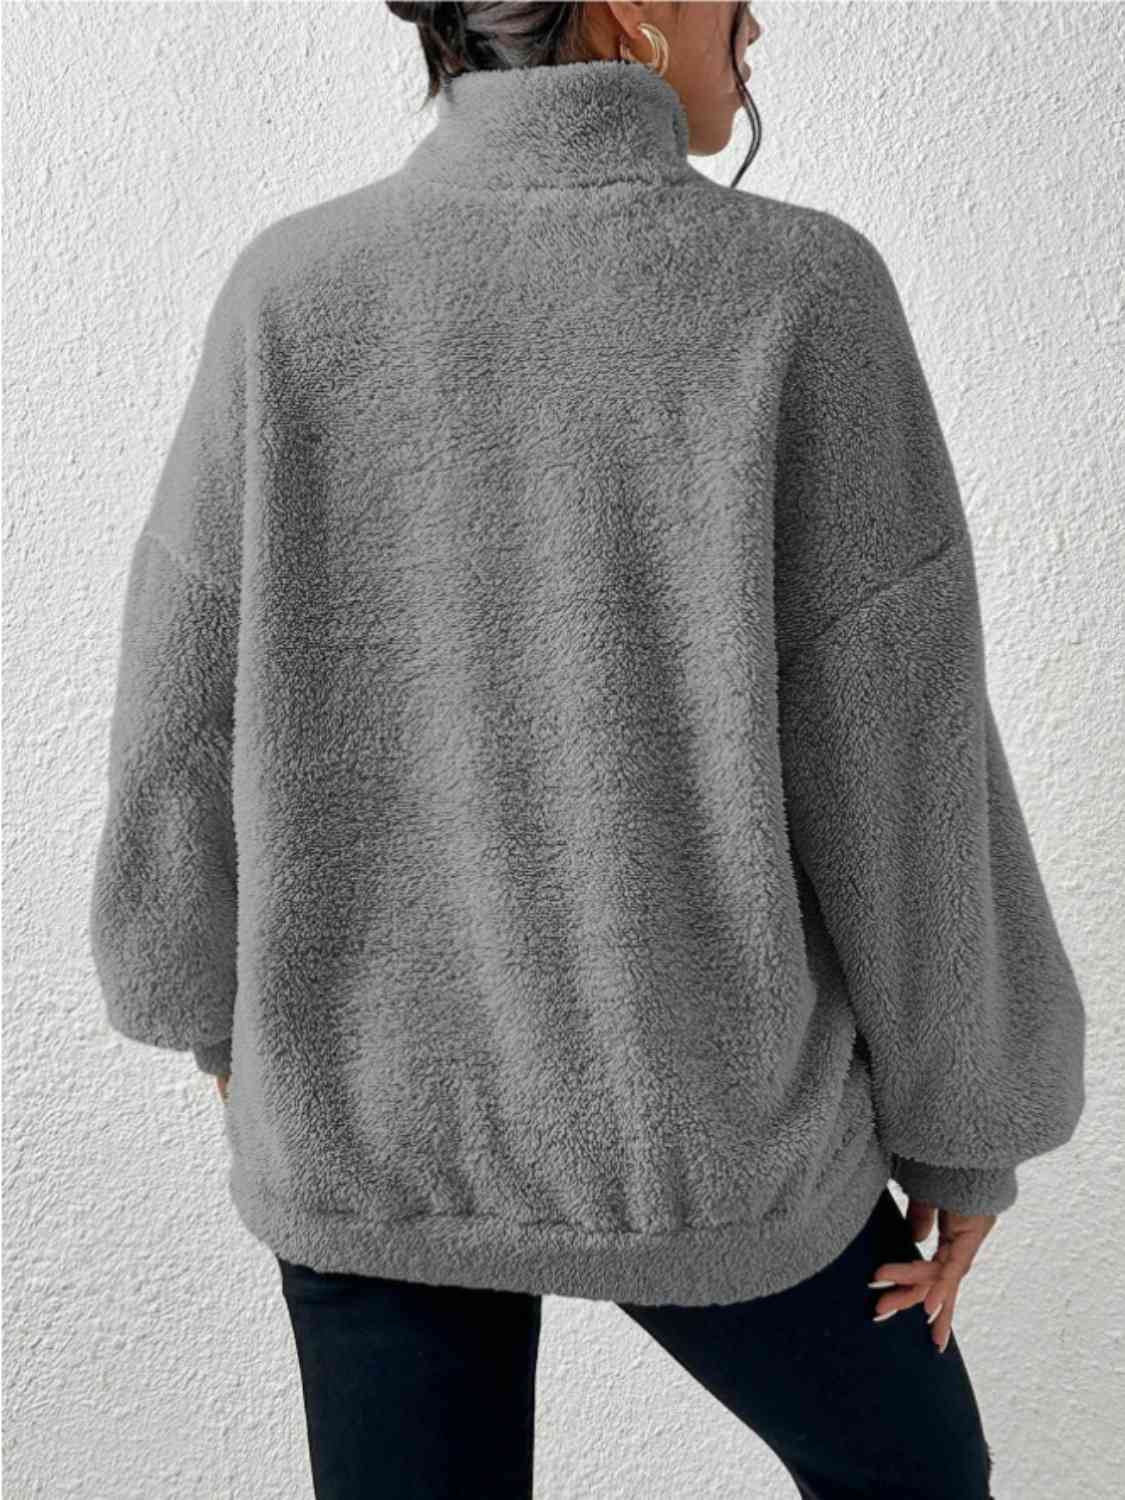 Women's Half-Zip Drop-Shoulder Sweatshirt with Pocket